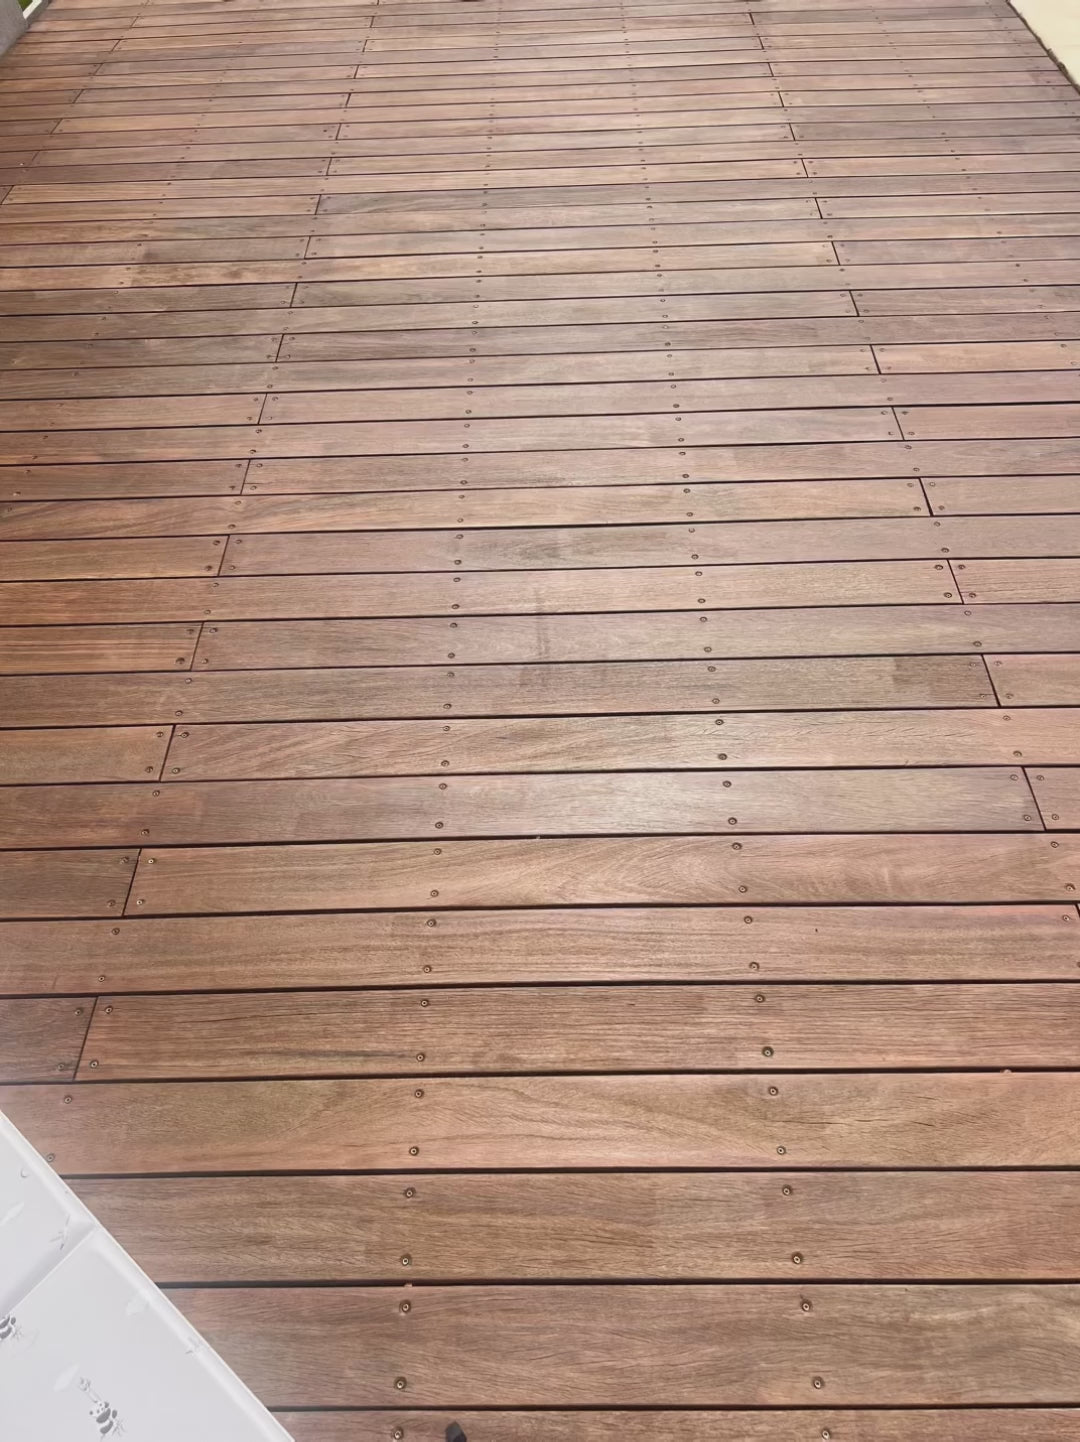 vidéo montrant comment le tapis de jeu Tapilou se plie